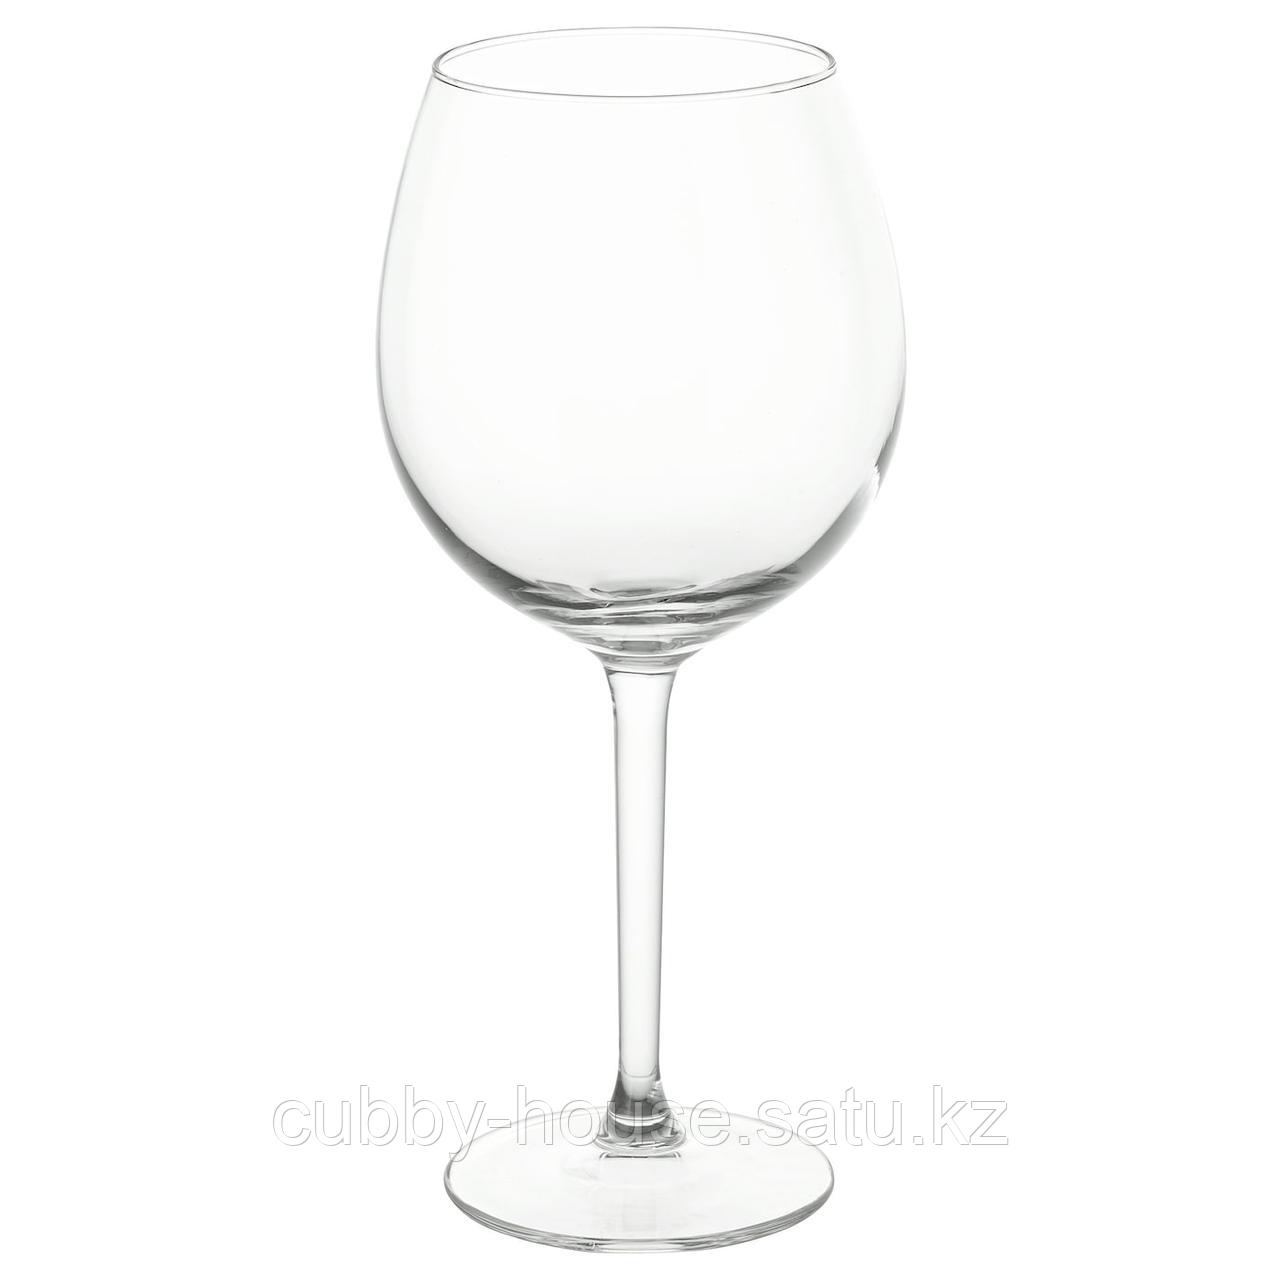 ХЕДЕРЛИГ Бокал для красного вина, прозрачное стекло, 59 сл